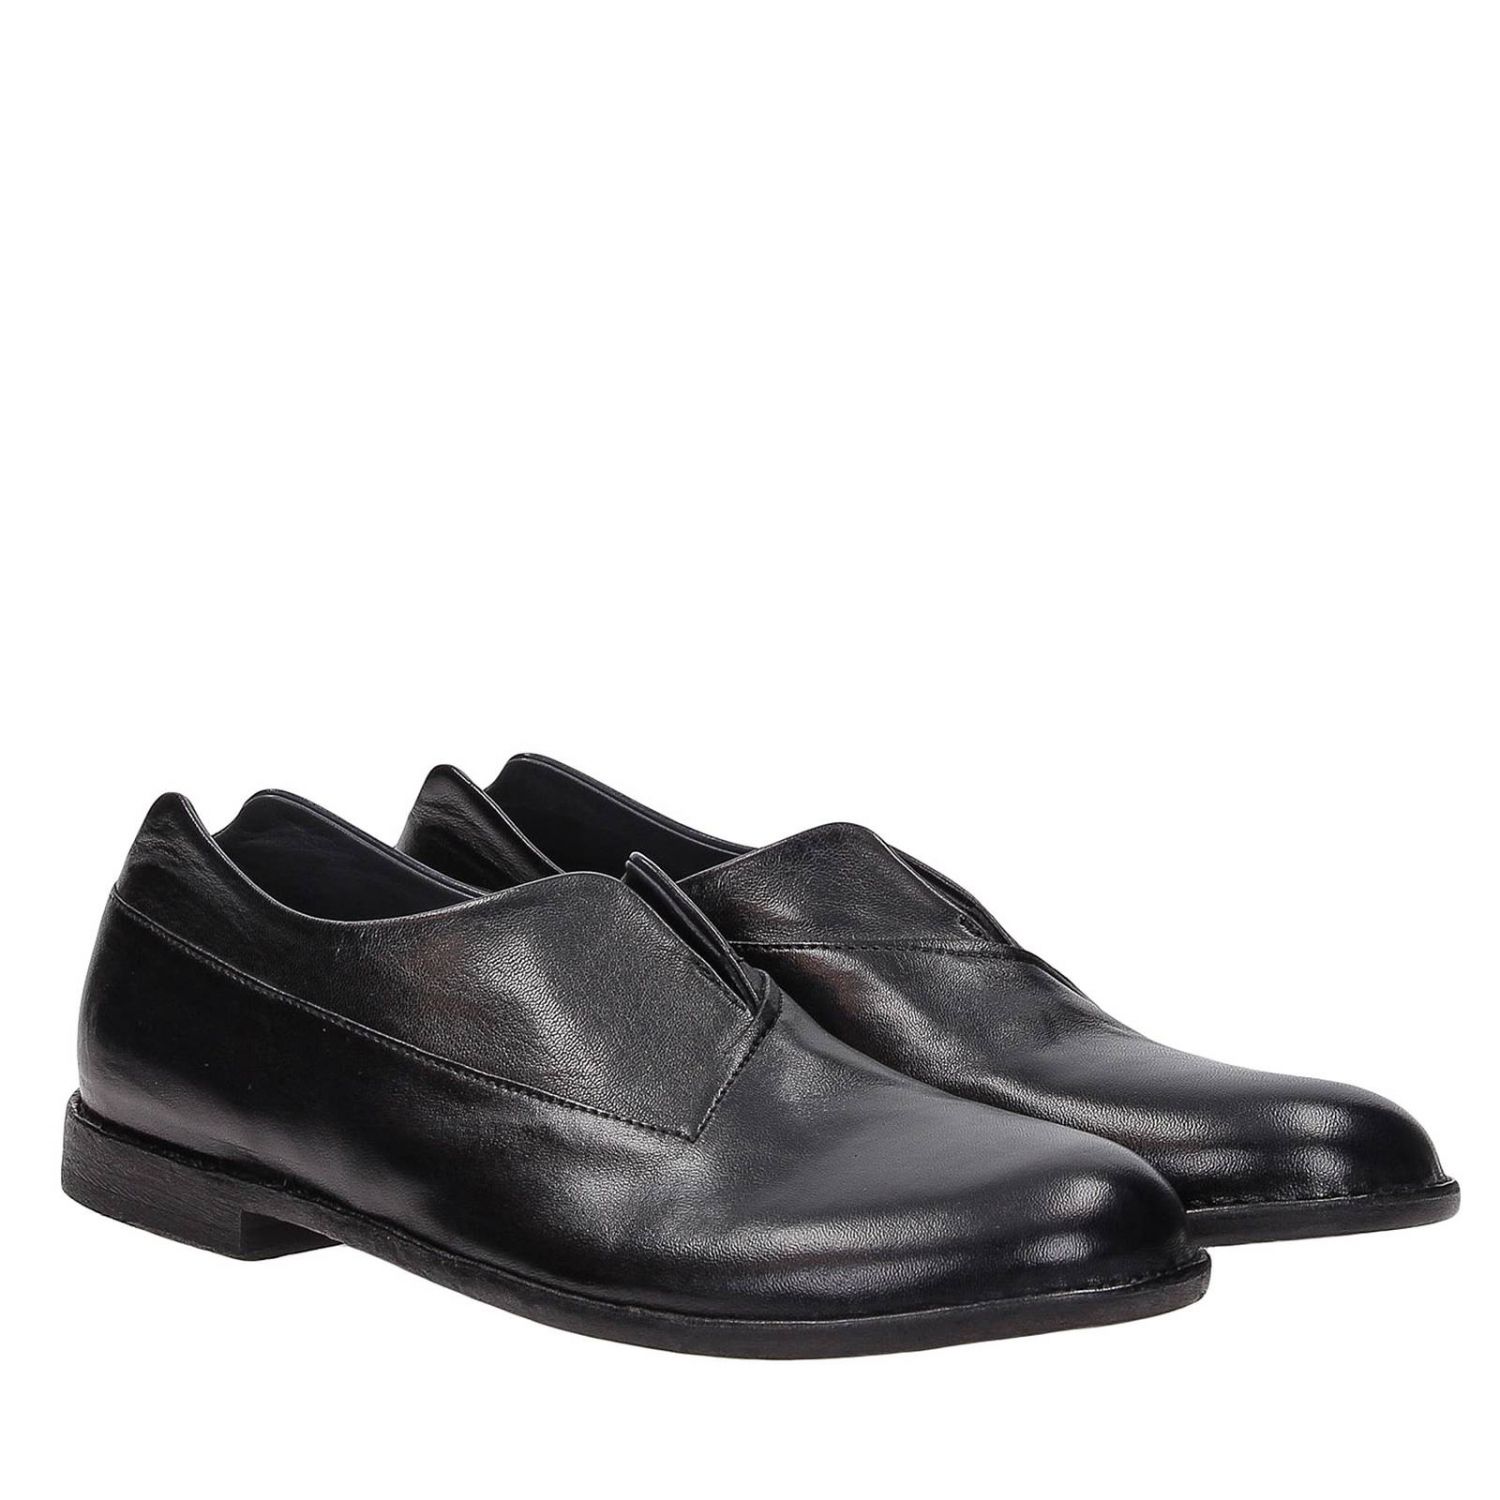 Outlet de Pantanetti: Zapatos planos para Negro | Zapatos Pantanetti 12222D en línea GIGLIO.COM